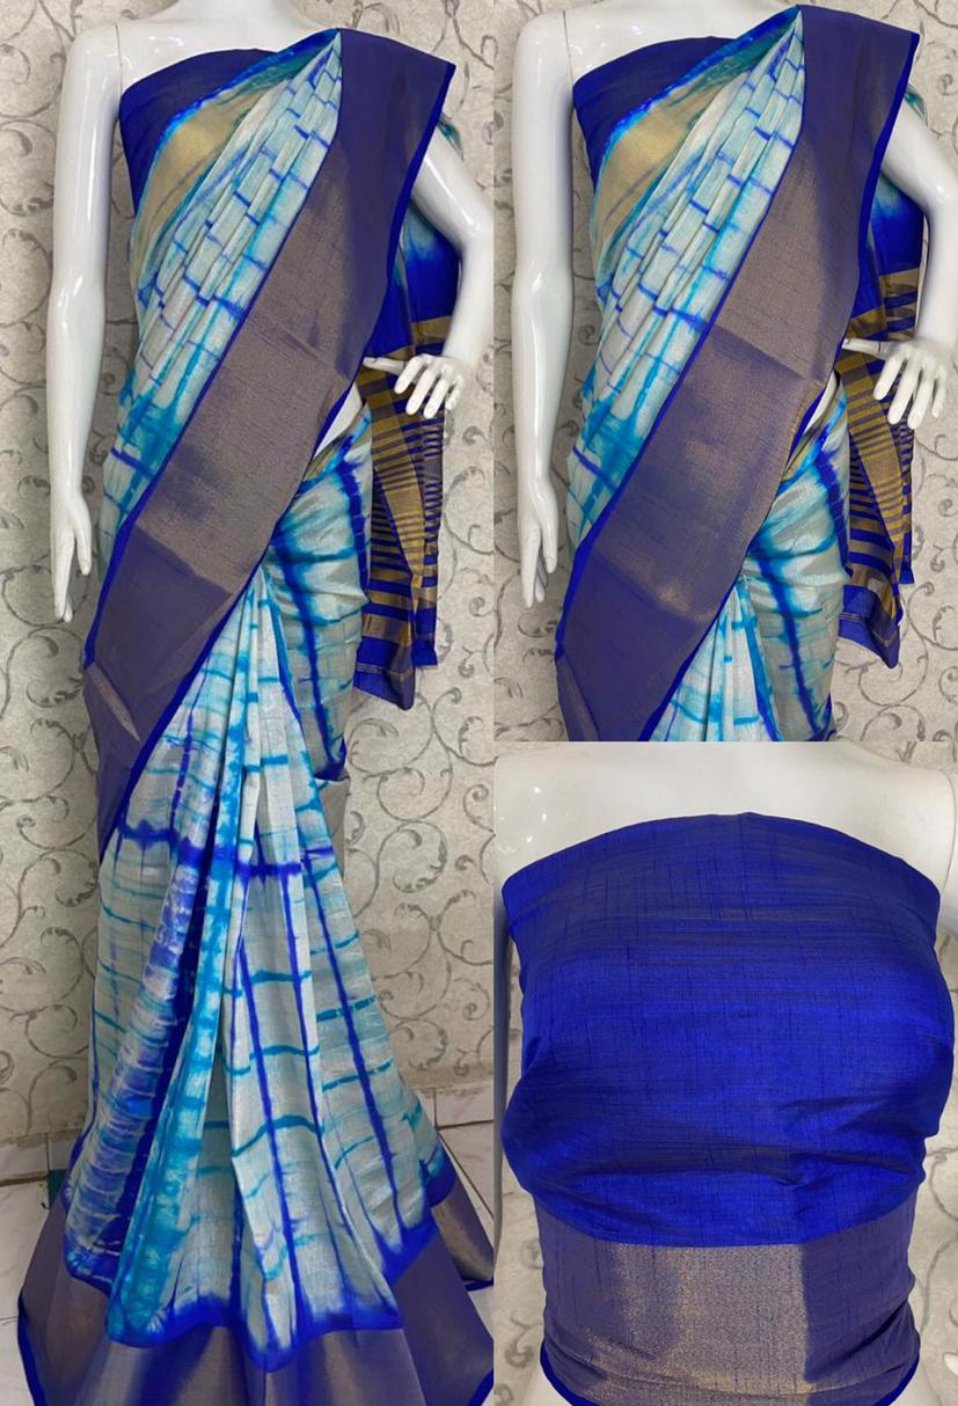 Tussar silk saree with blouse